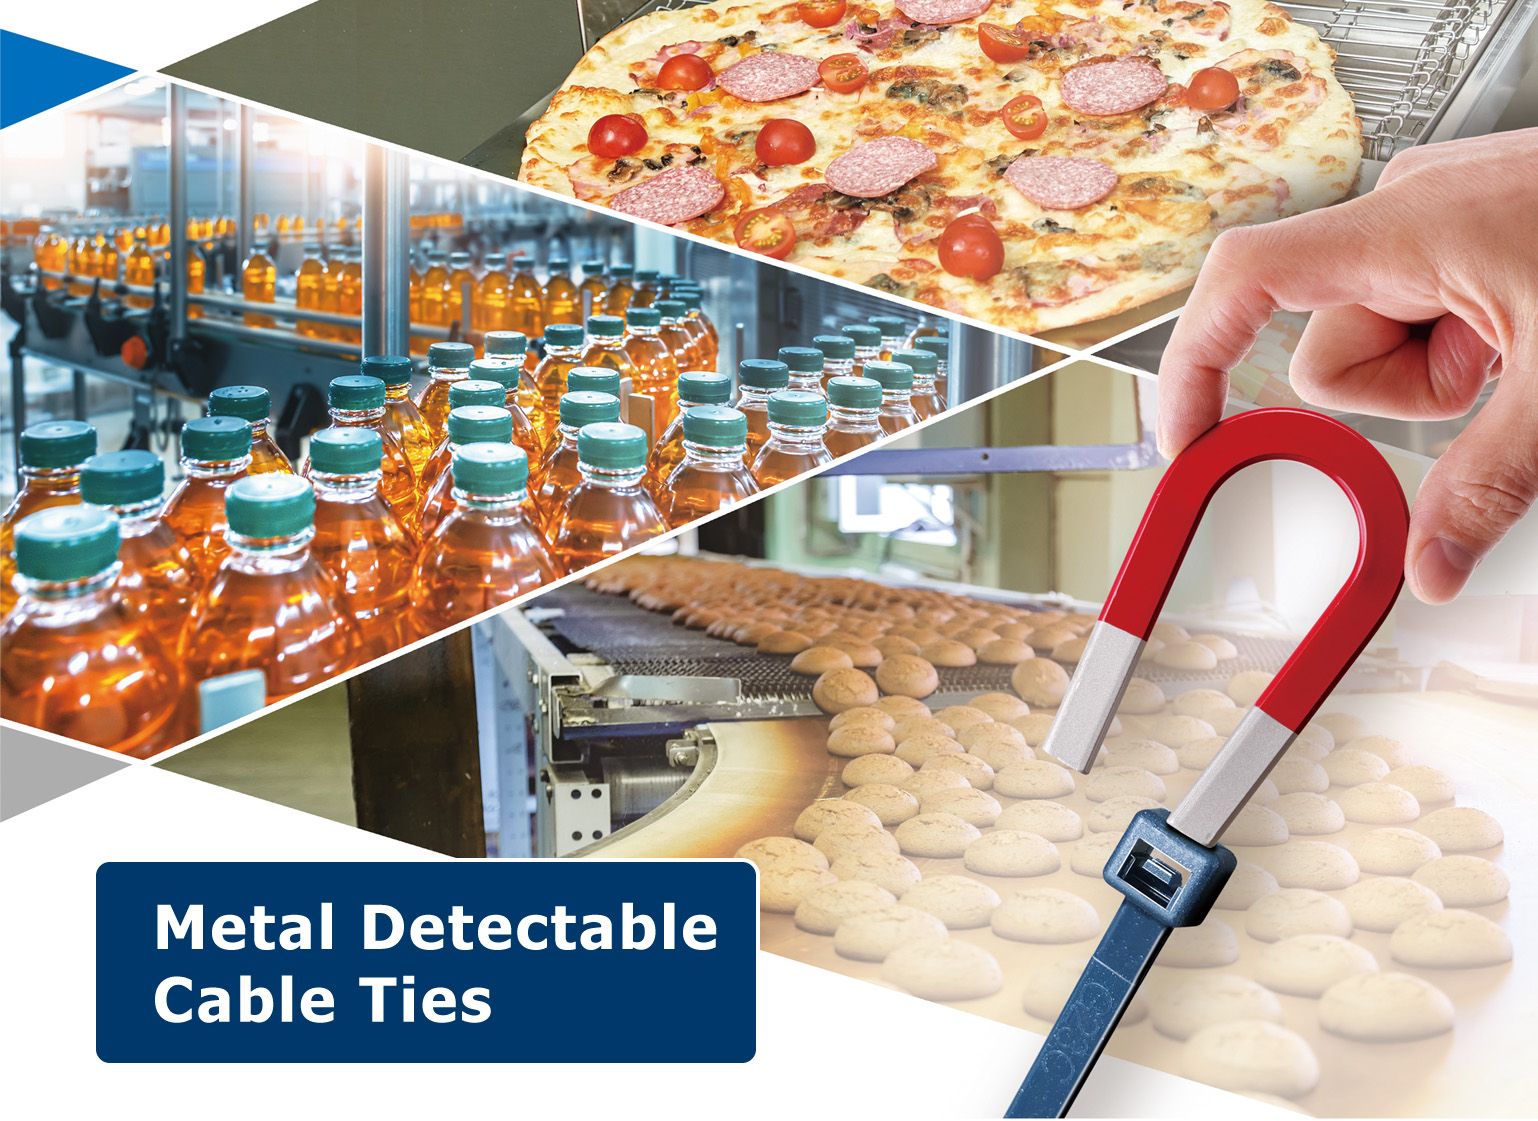 Metalldetektierbarer Kabelbinder ist ideal für die Lebensmittel-, Getränke-, Pharma- und Kosmetikindustrie